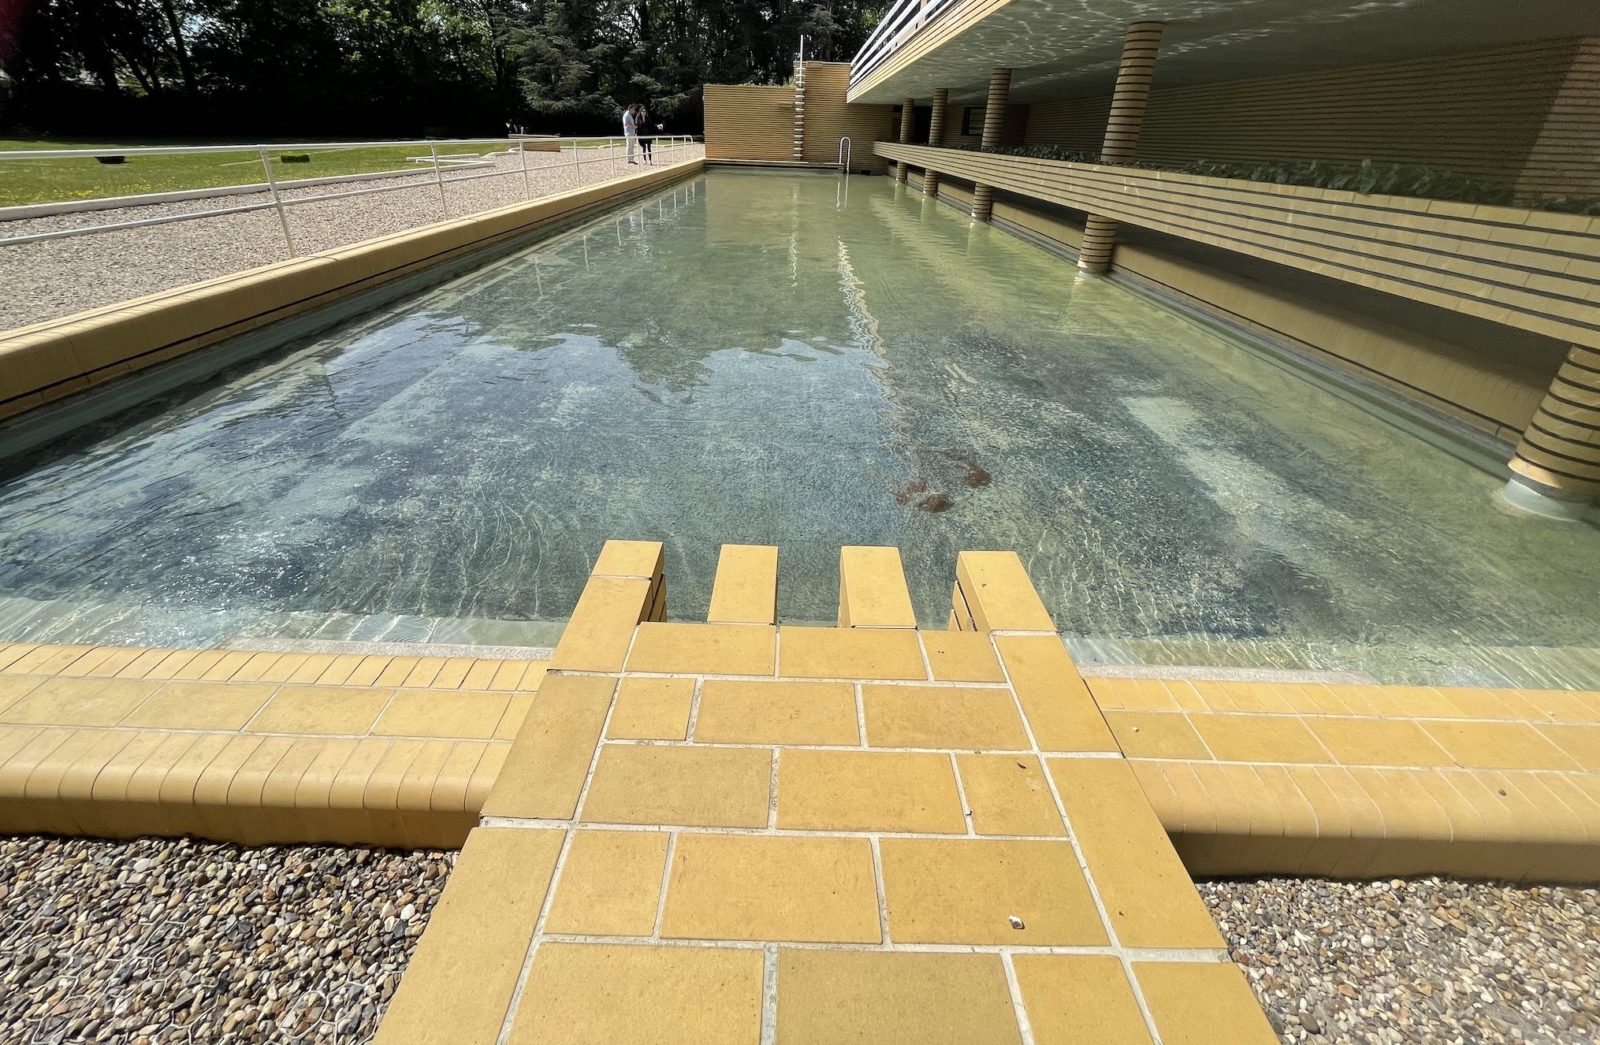 Villa Cavrois détail bassin de natation